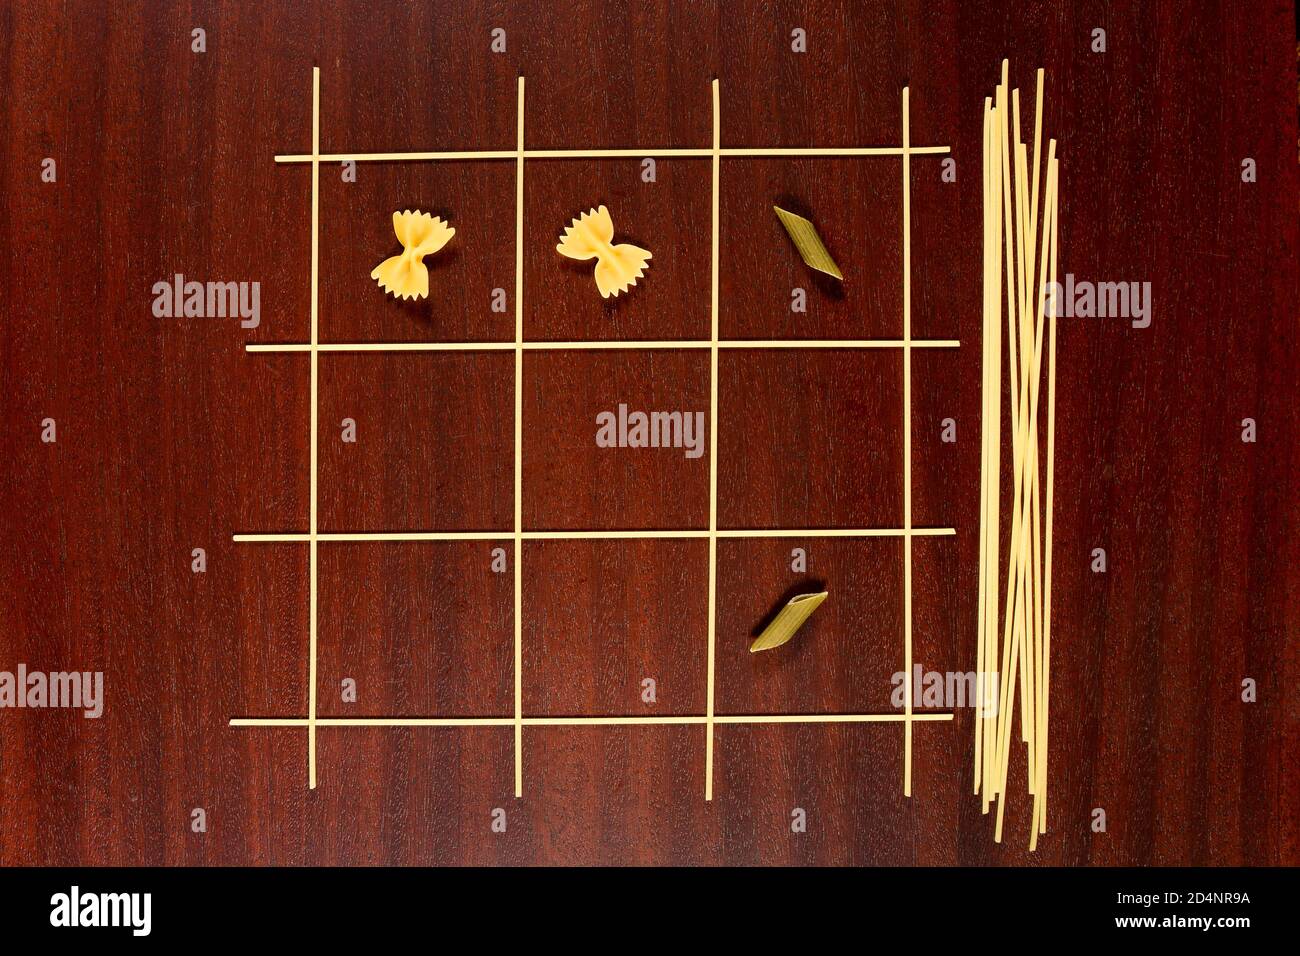 Italienische Pasta. TIC Tac Toe oder XS und OS Spiel aus rohen Spaghetti, Farfalle und Penne gemacht. Trocknen Sie Makkaroni und Capellini auf einem braunen Holztisch. Stockfoto